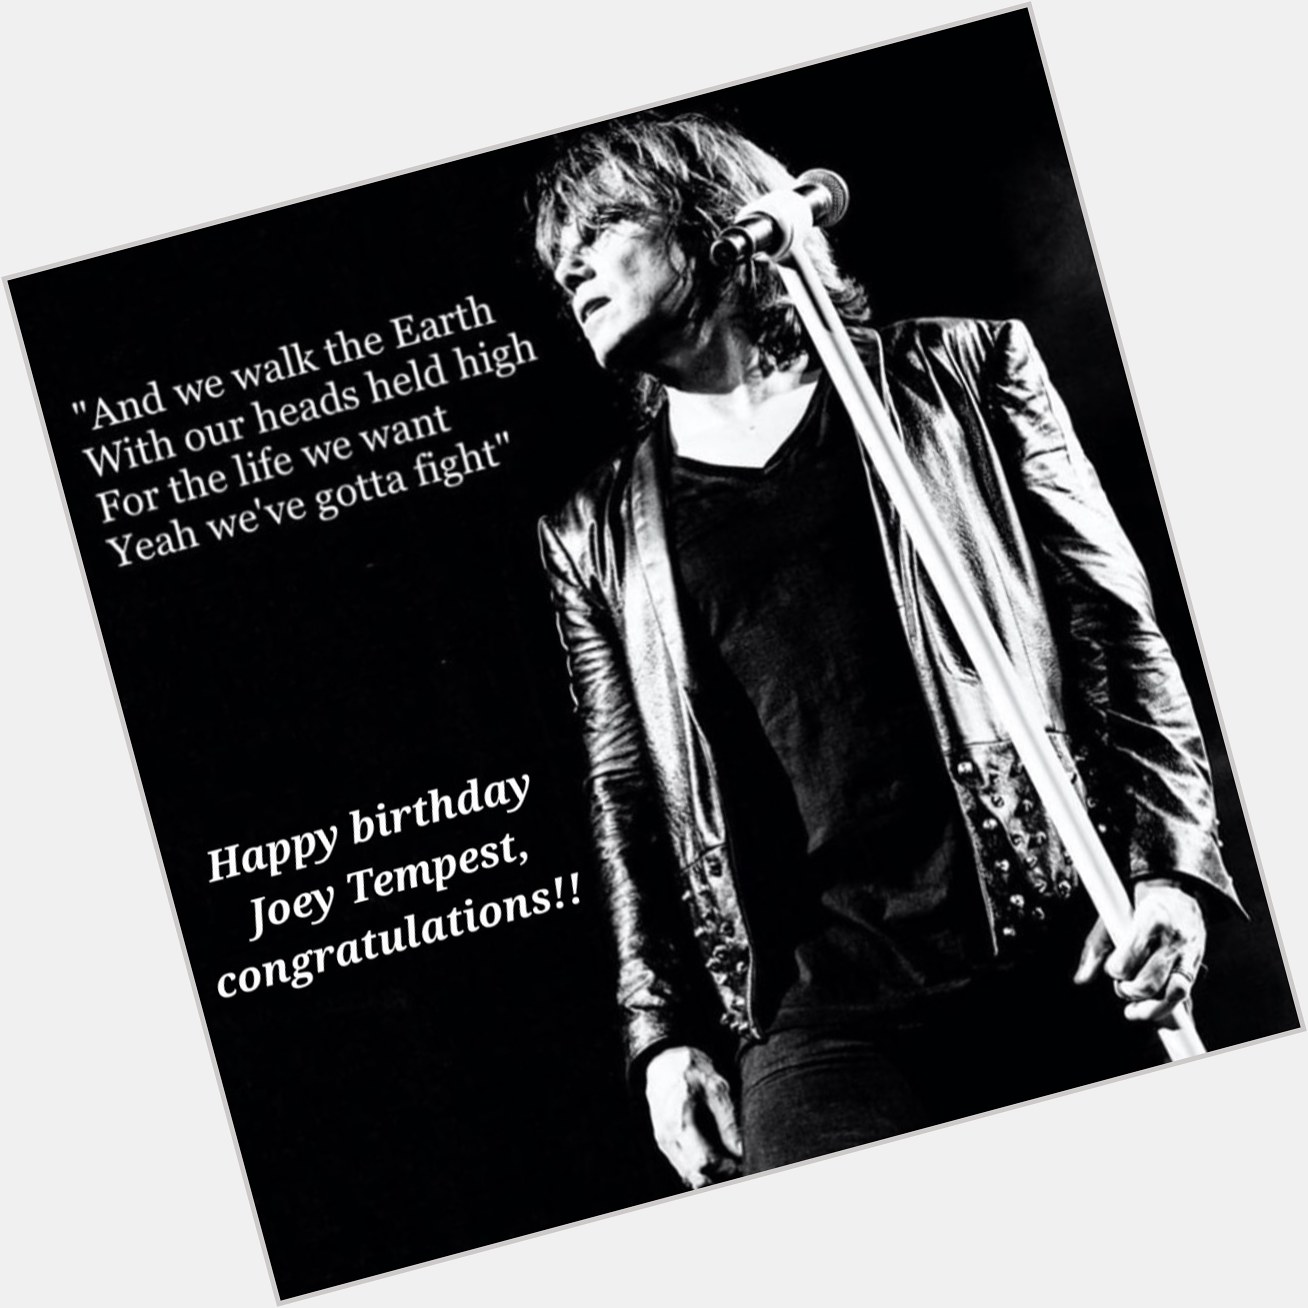 Happy birthday Joey Tempest             